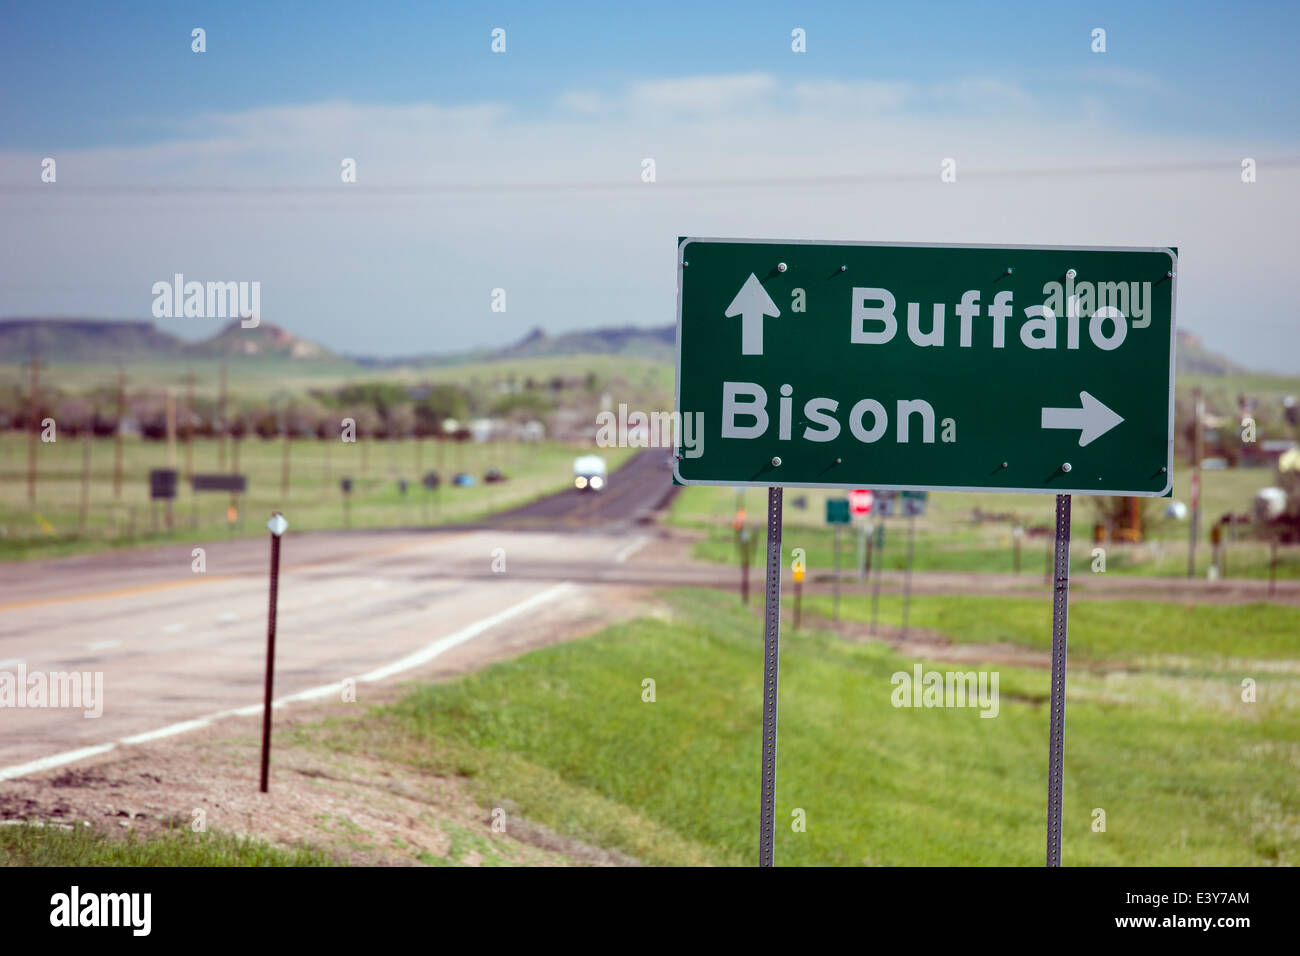 Buffalo, Dakota du Sud - un panneau routier sur l'US Highway 85 points pour les villes de Buffalo et de Bison. Banque D'Images